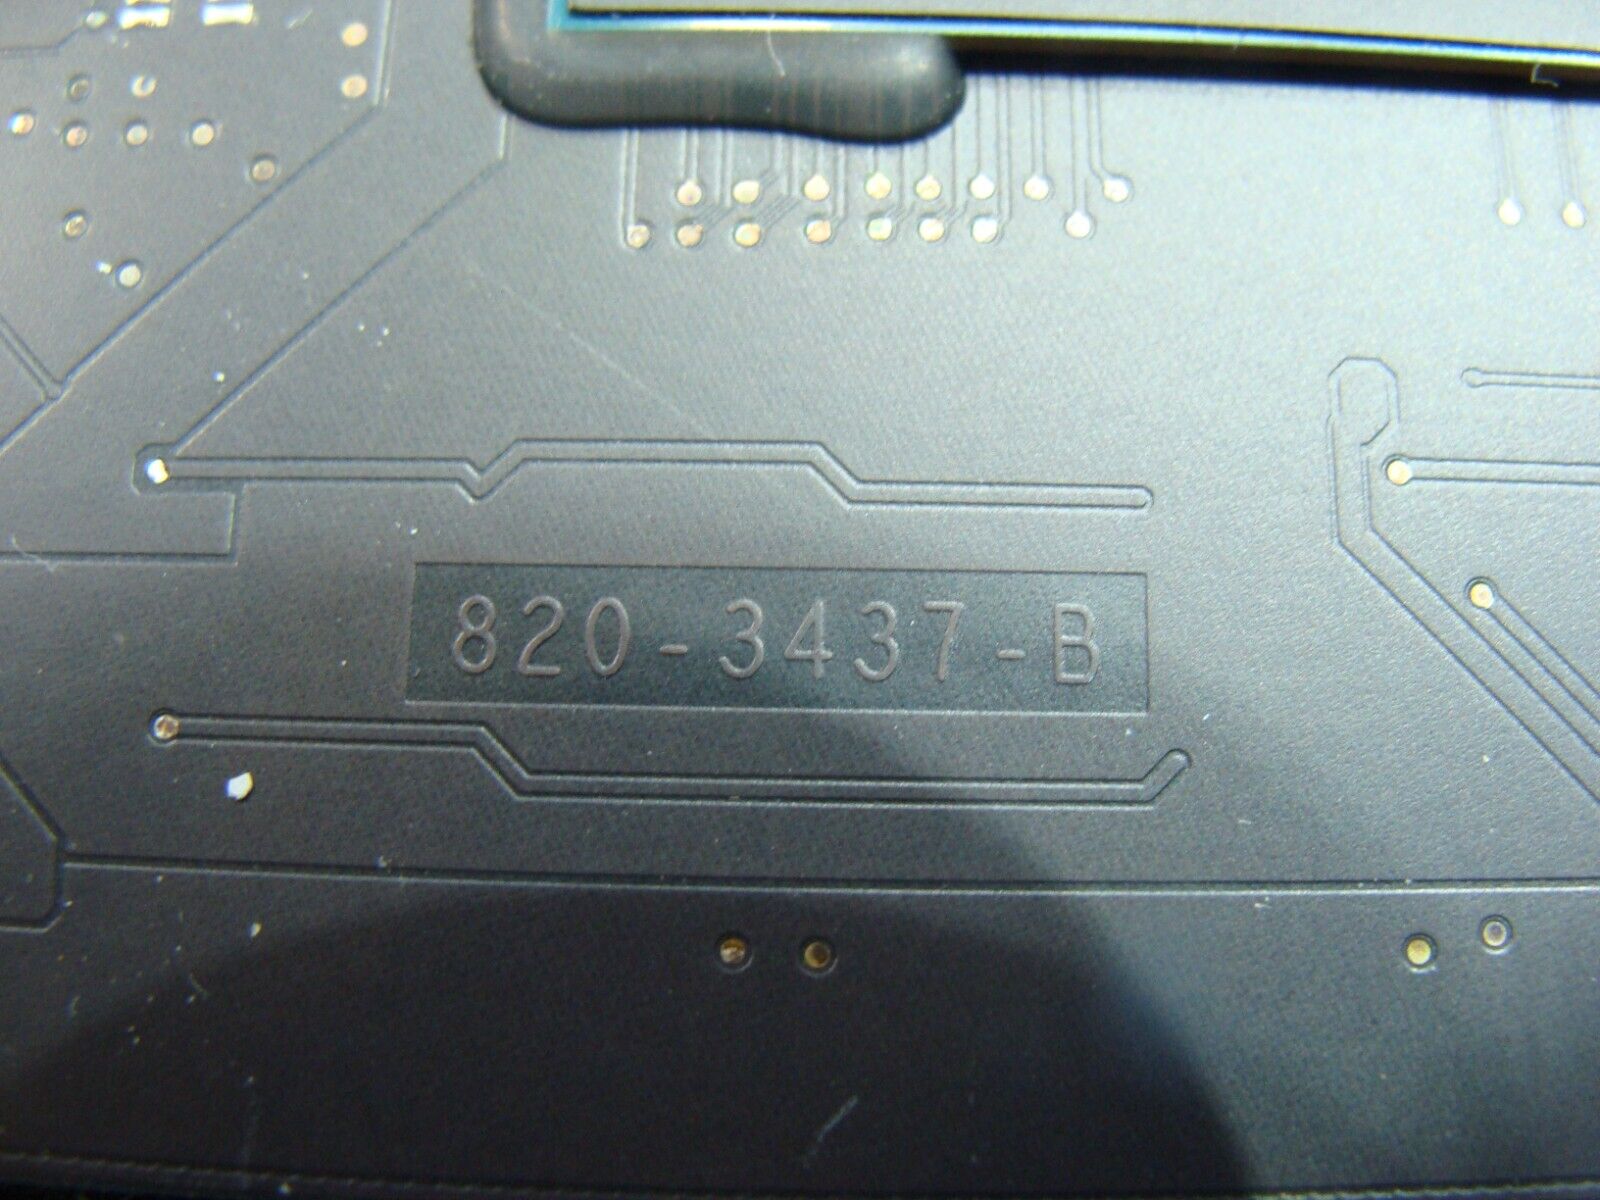 MacBook Air A1466 2014 MD760LL i5-4260U 1.4GHz 4GB Logic Board 661-00062 AS IS